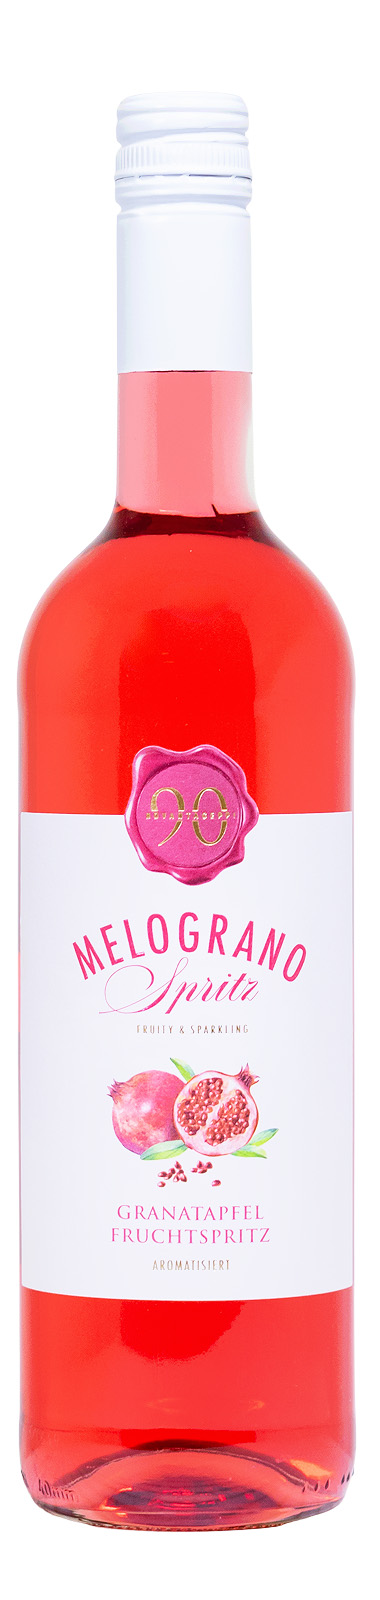 Novantaceppi Melograno Spritz - 0,75L 8% vol